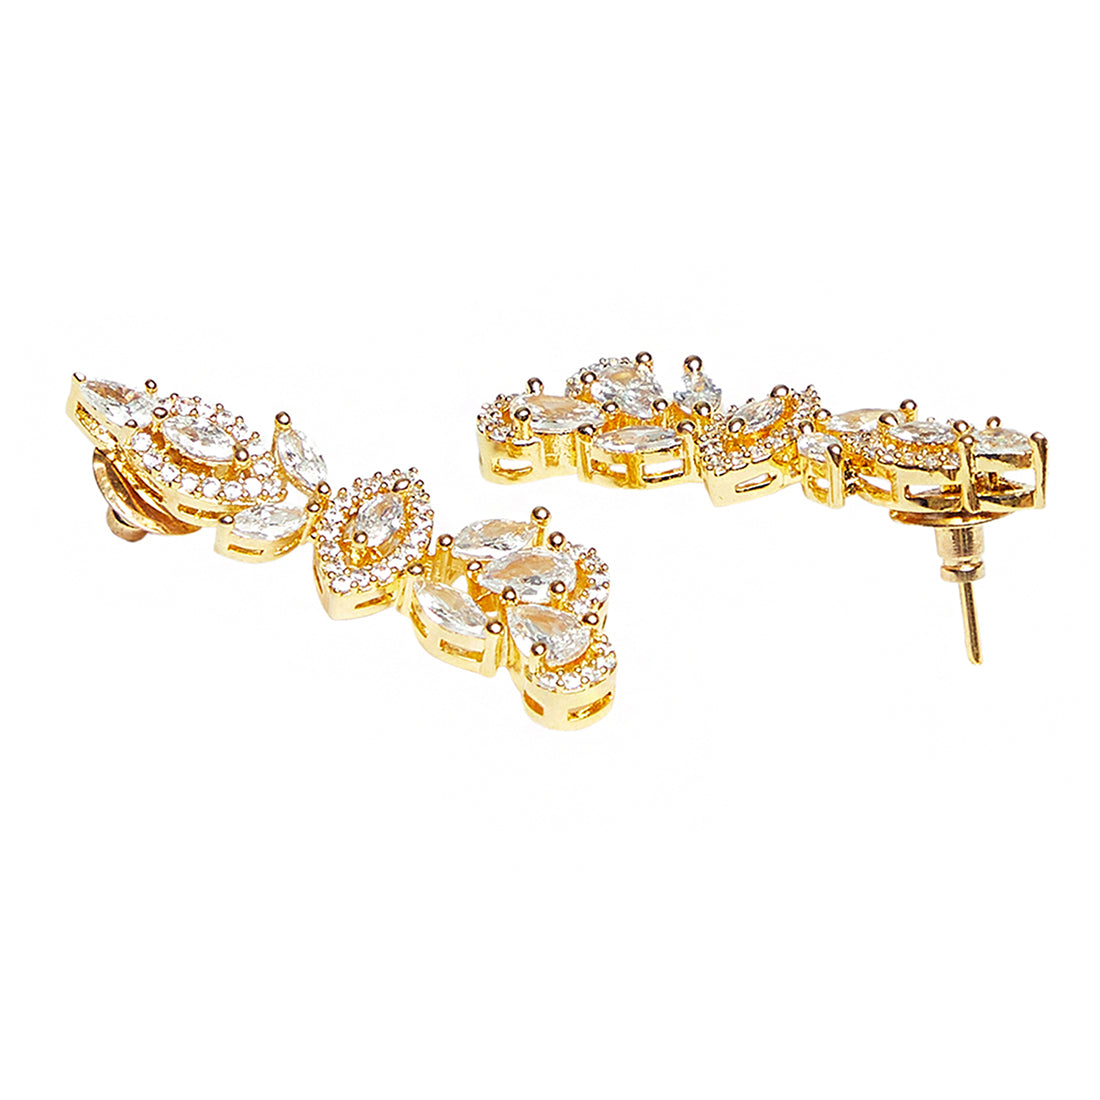 Sparkling Elegance Rose Gold Brass Necklace Set